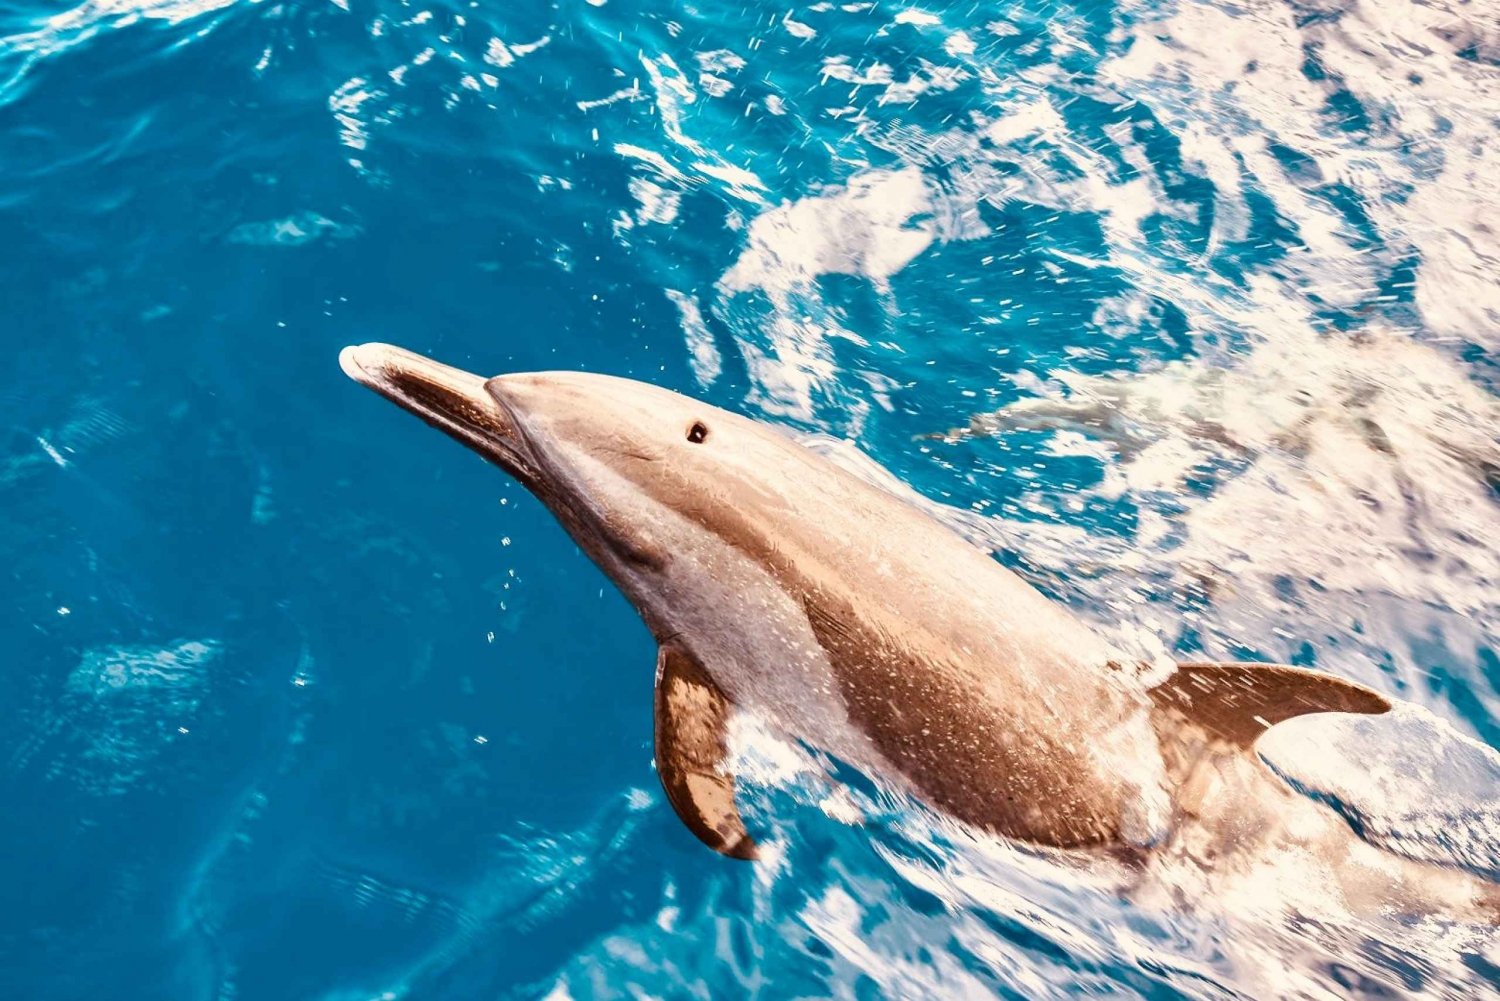 West O'ahu: catamarancruise dolfijnen spotten en snorkelen